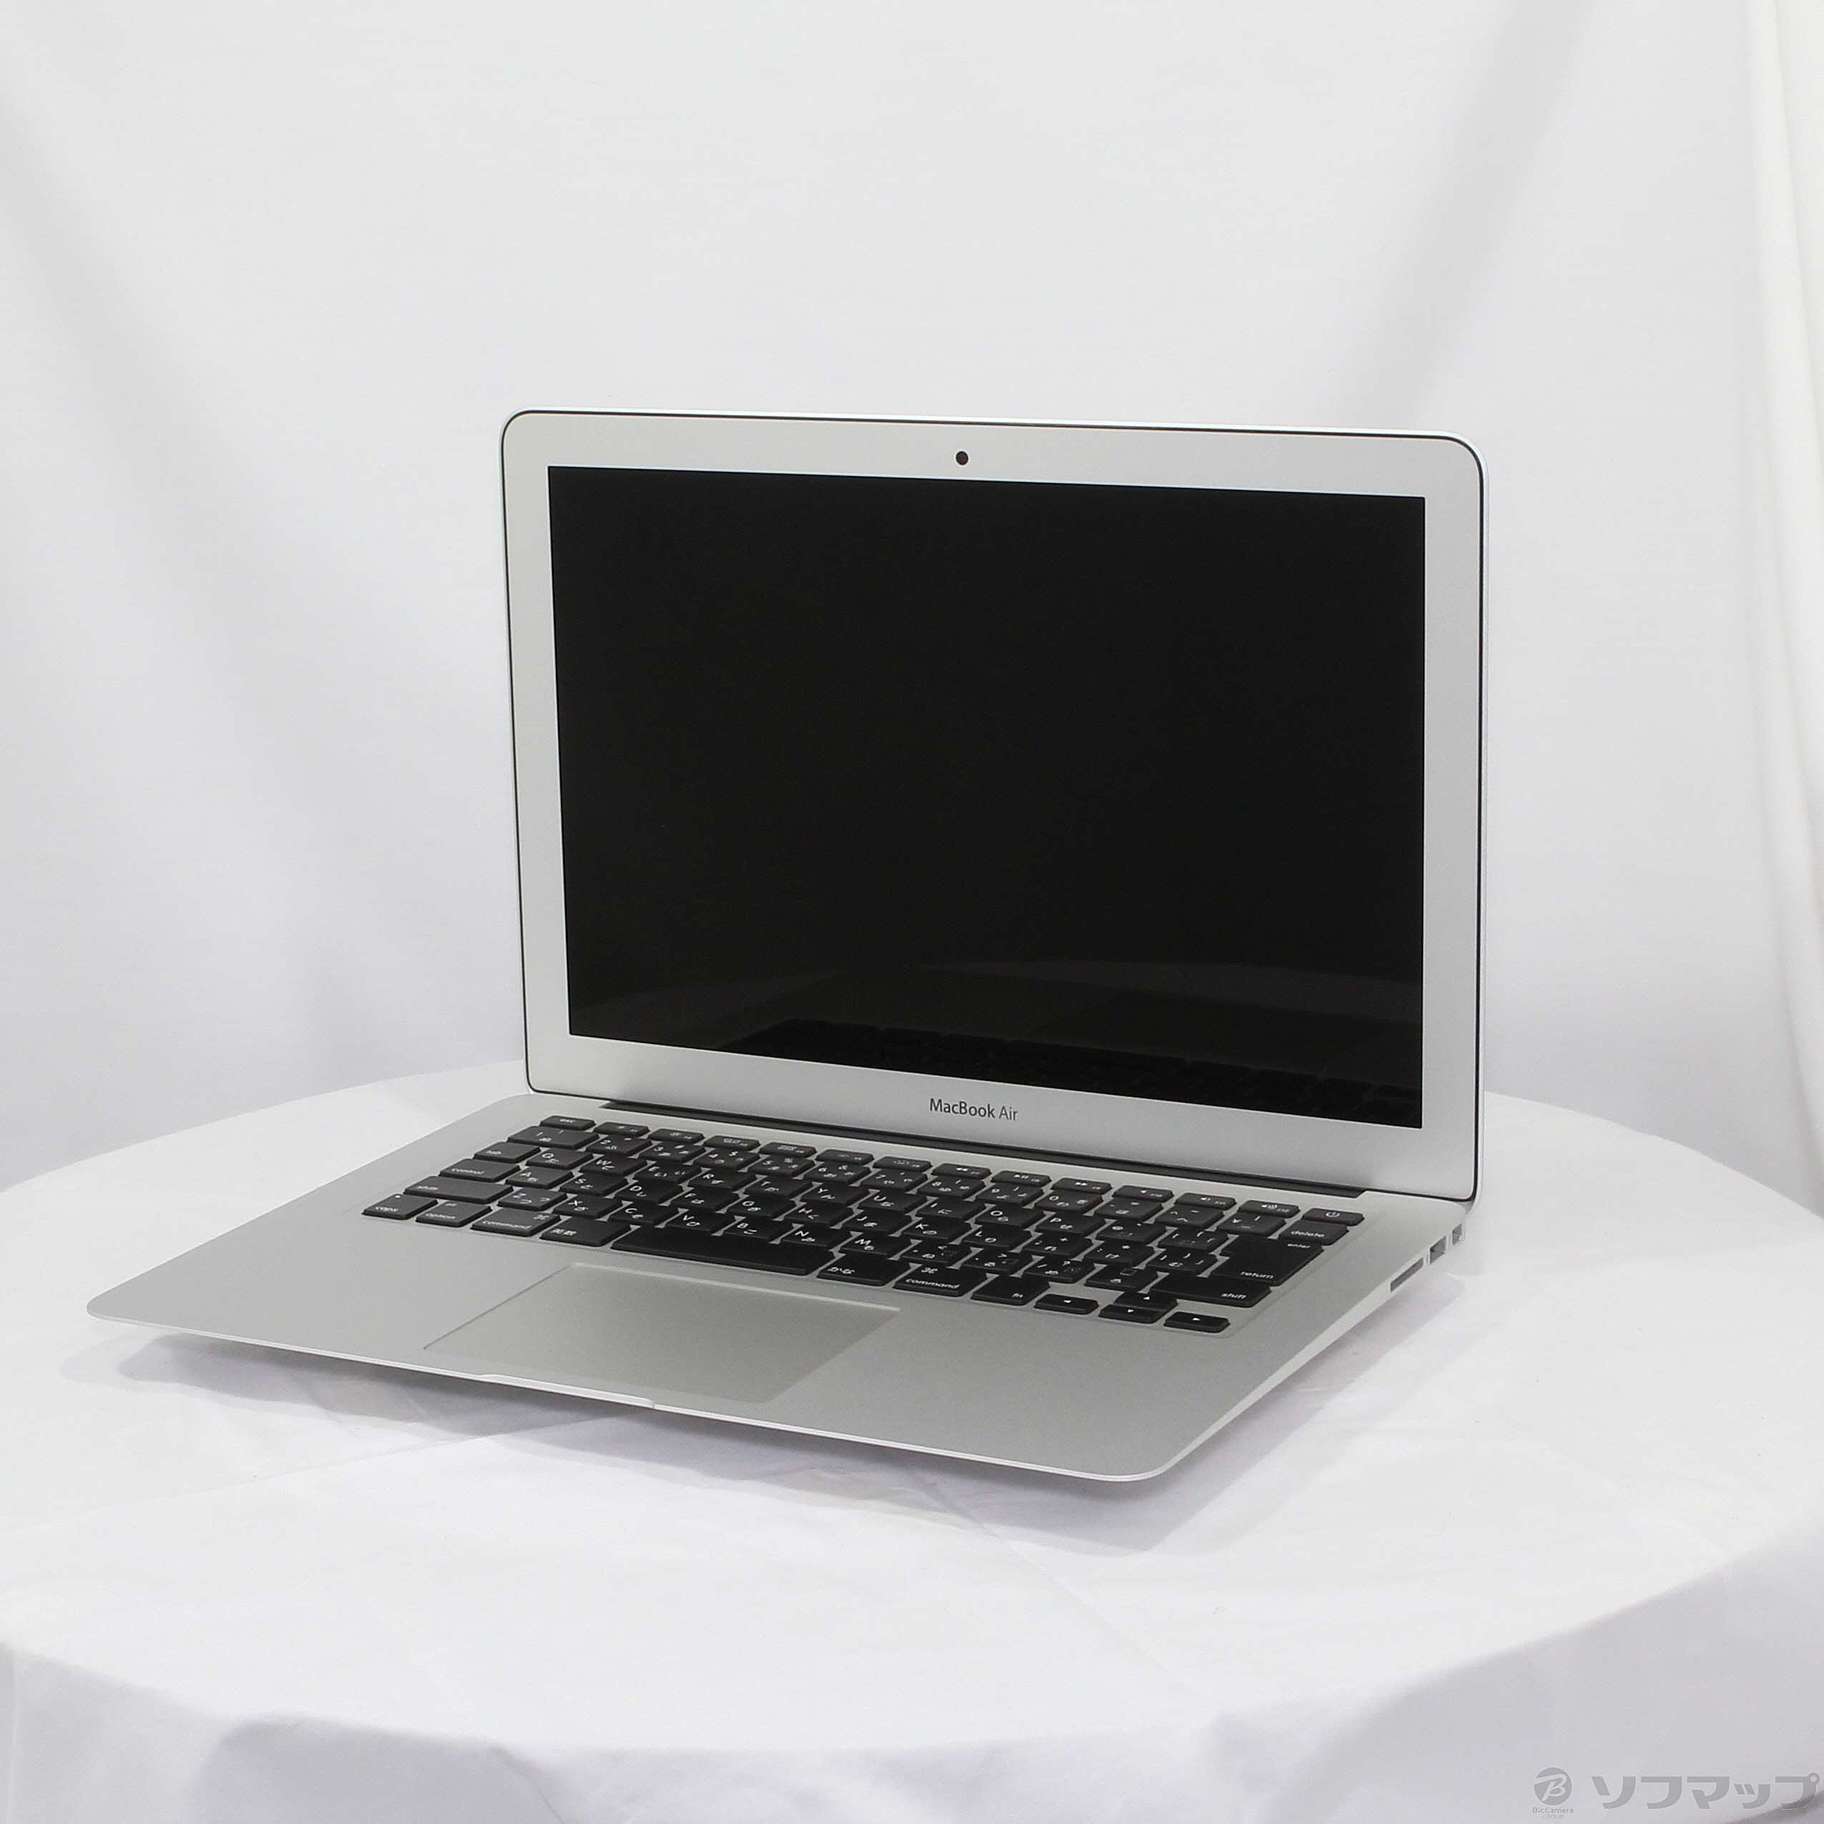 Apple MacBook Air Mid 2013 A1466